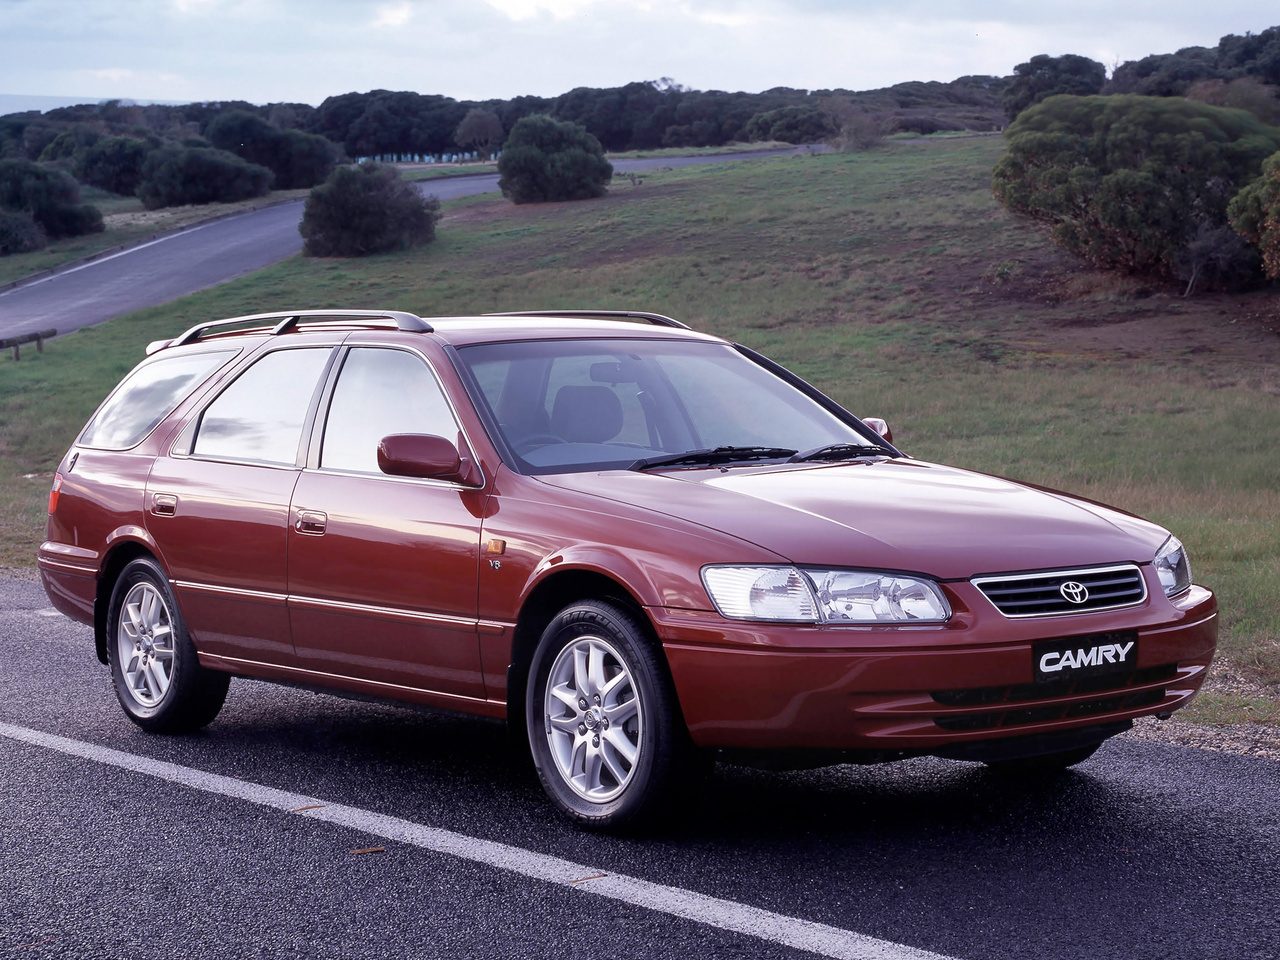 1996-toyota-camry-station-wagon-XV20-fourth-generation.jpg